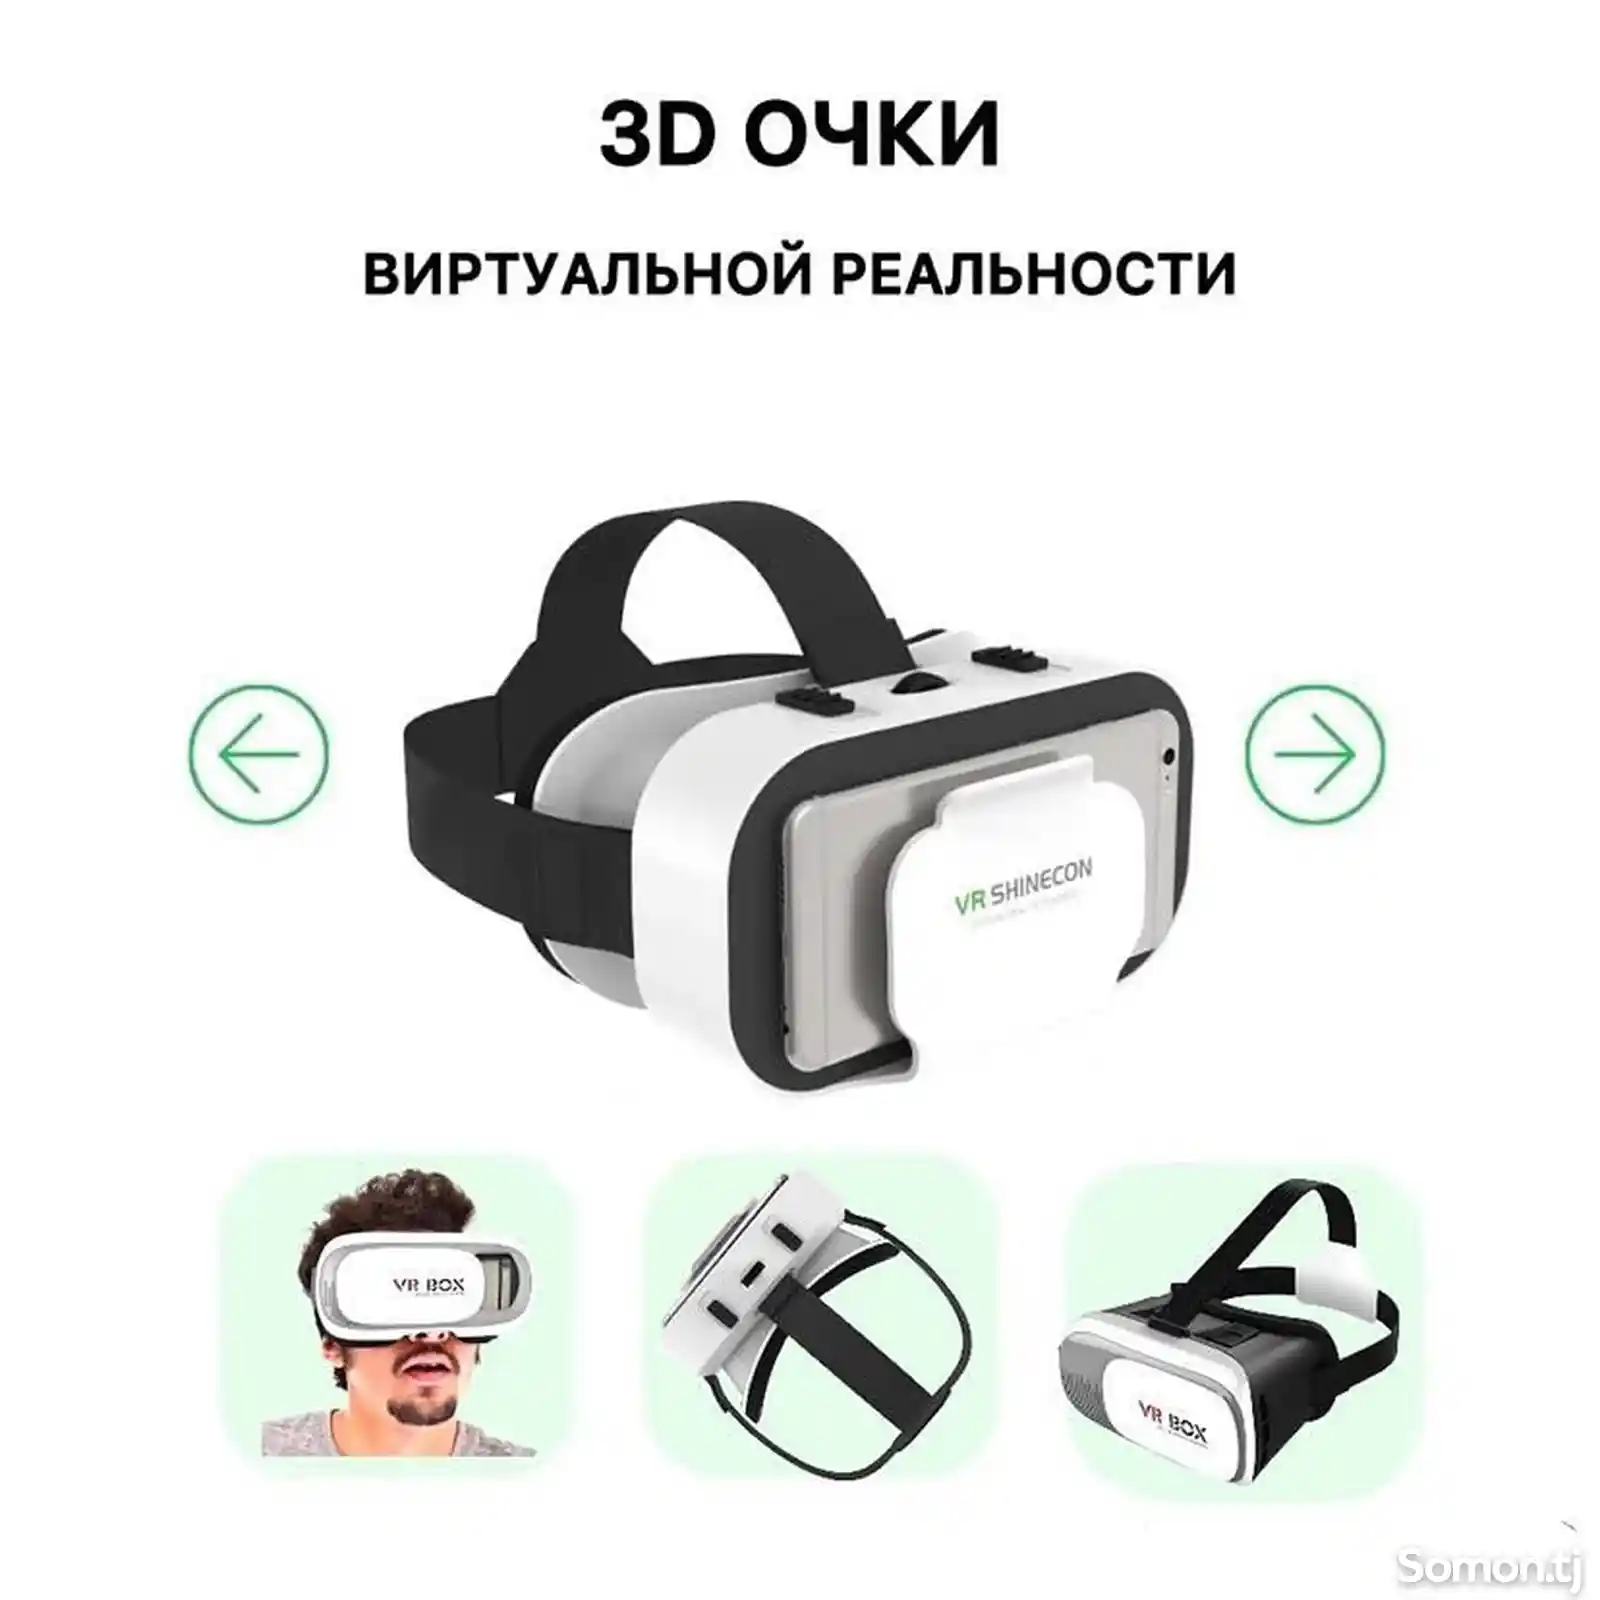 3D Очки Виртуальной реальности-1